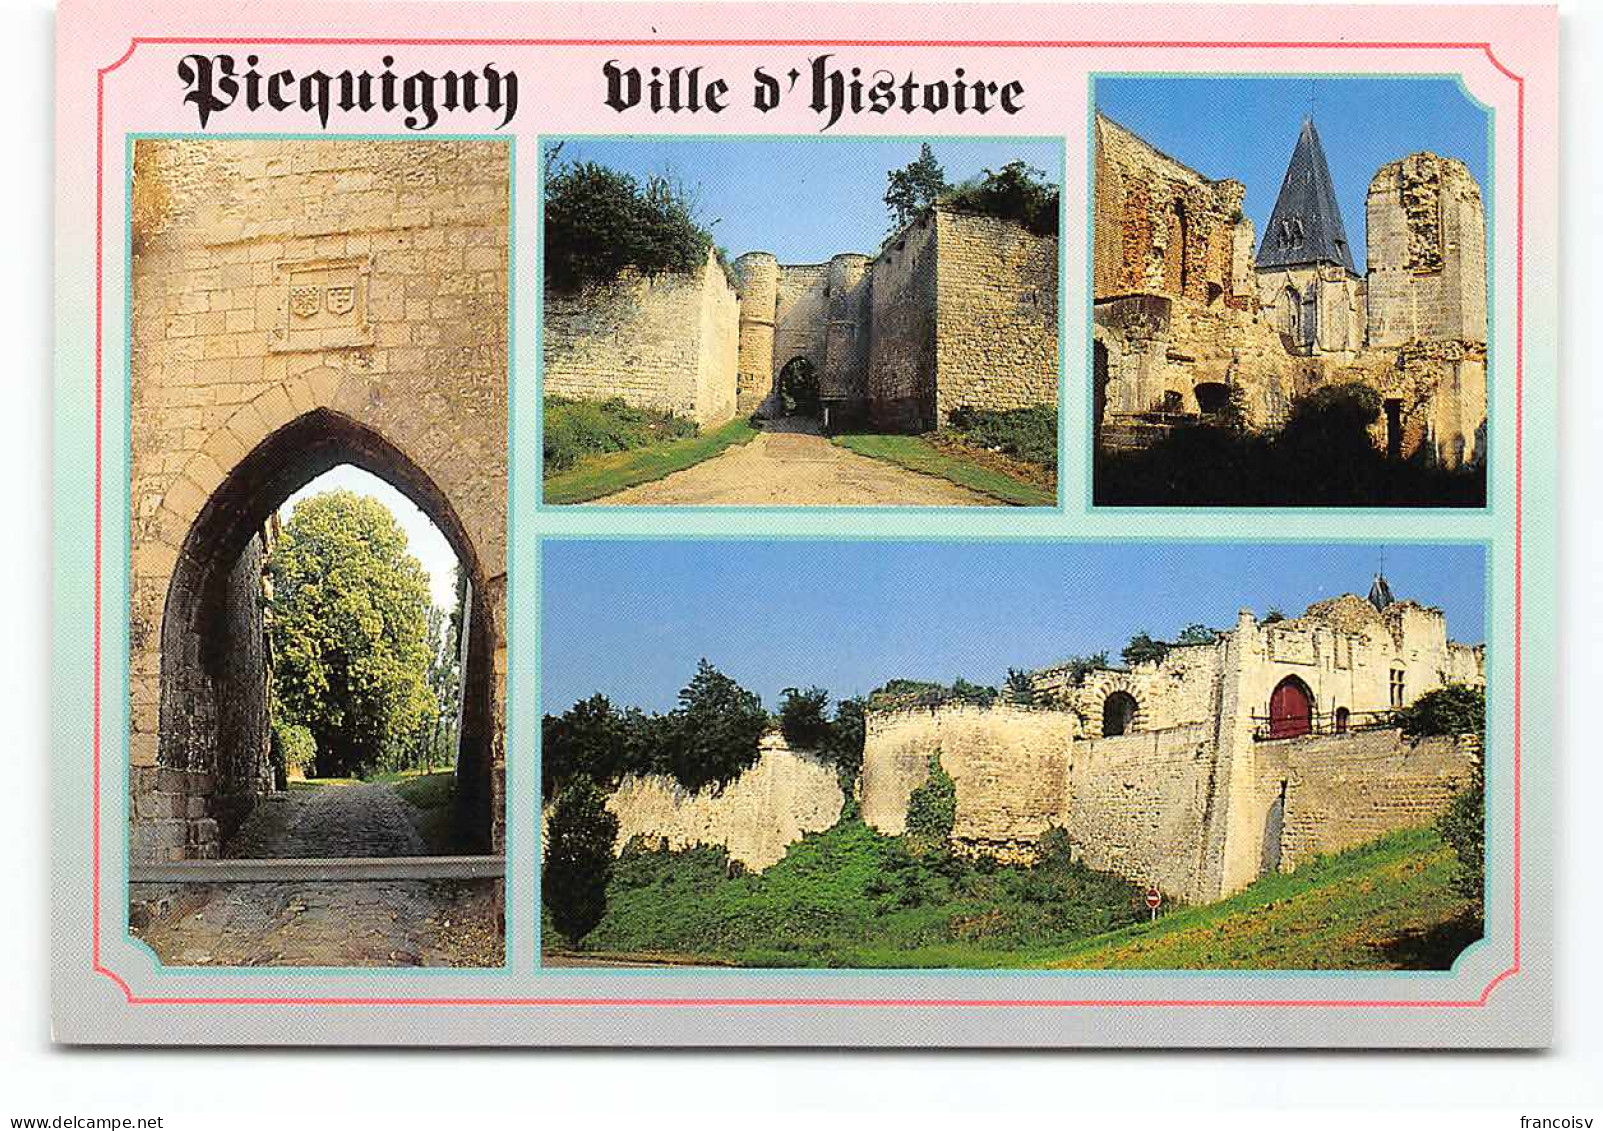 Picquigny- D80  Multivues. Chateau. Ville D'Histoire - Picquigny